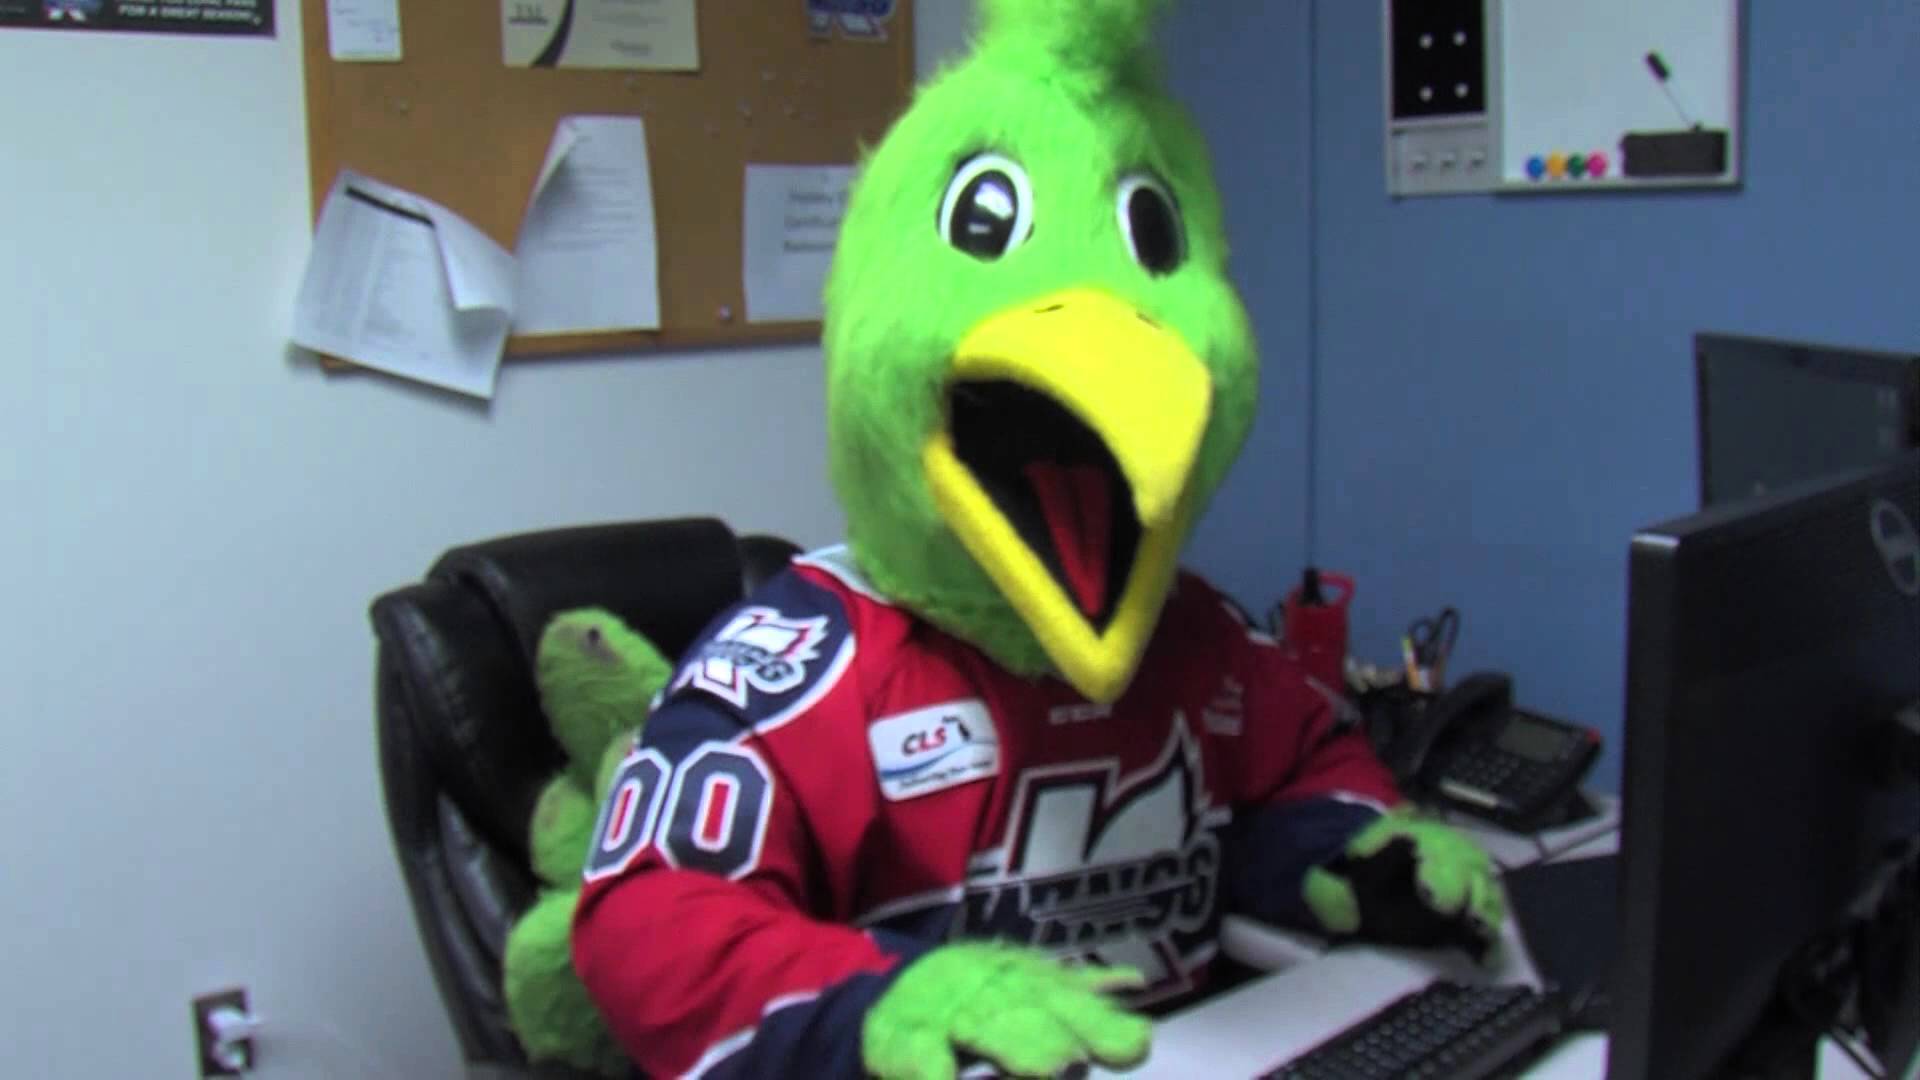 Hockey Cartoon Porn - VIDEO] Hockey mascot searching for bird porn â€“ Hockey Squawk